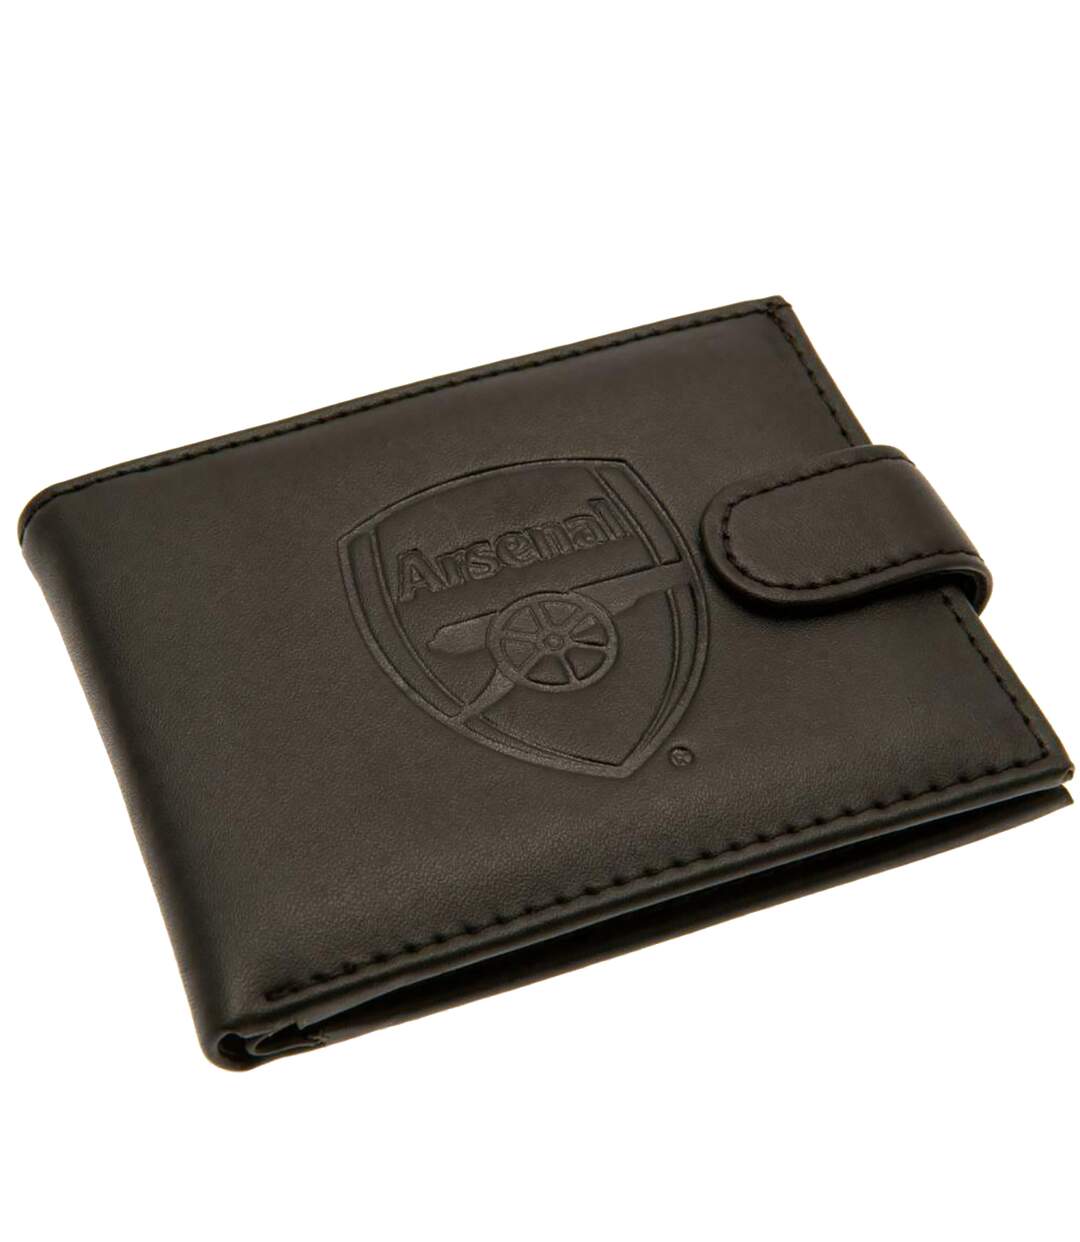 Arsenal FC -  Porte feuille en cuir (Noir) (Taille Unique) - UTSG12911